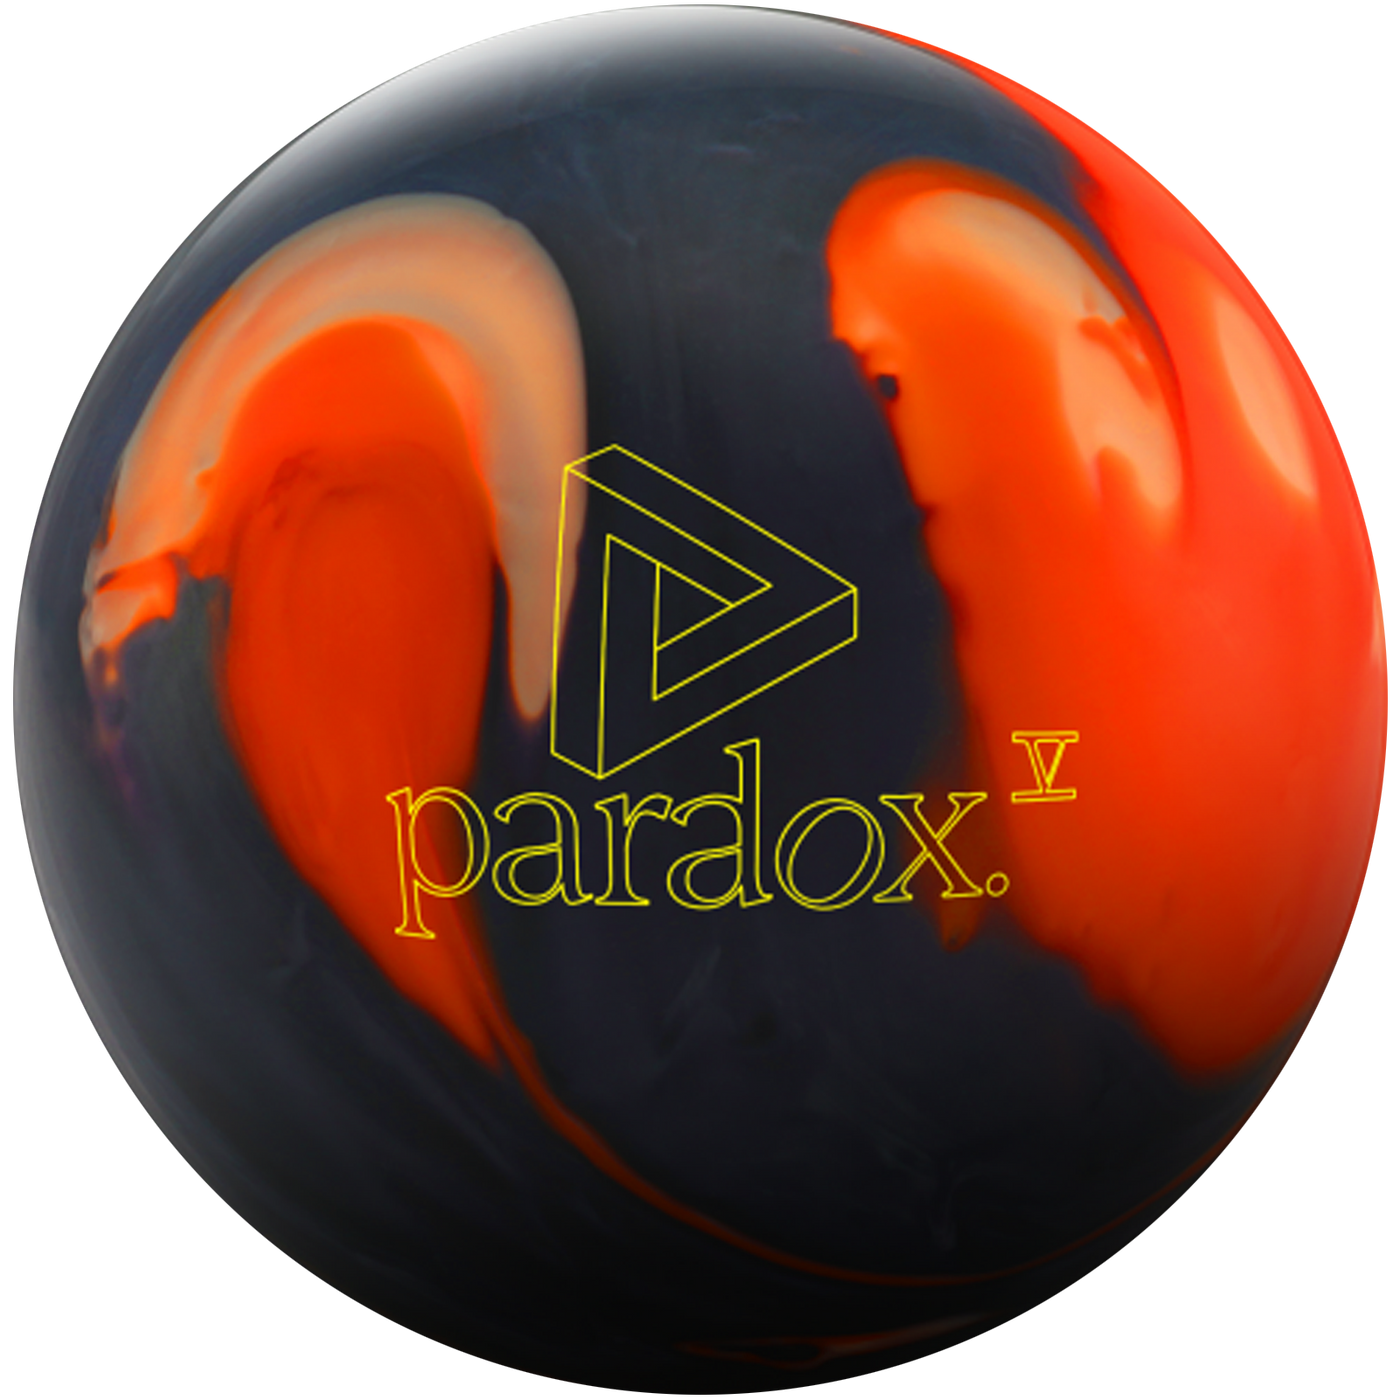 Paradox V Bowling Ball